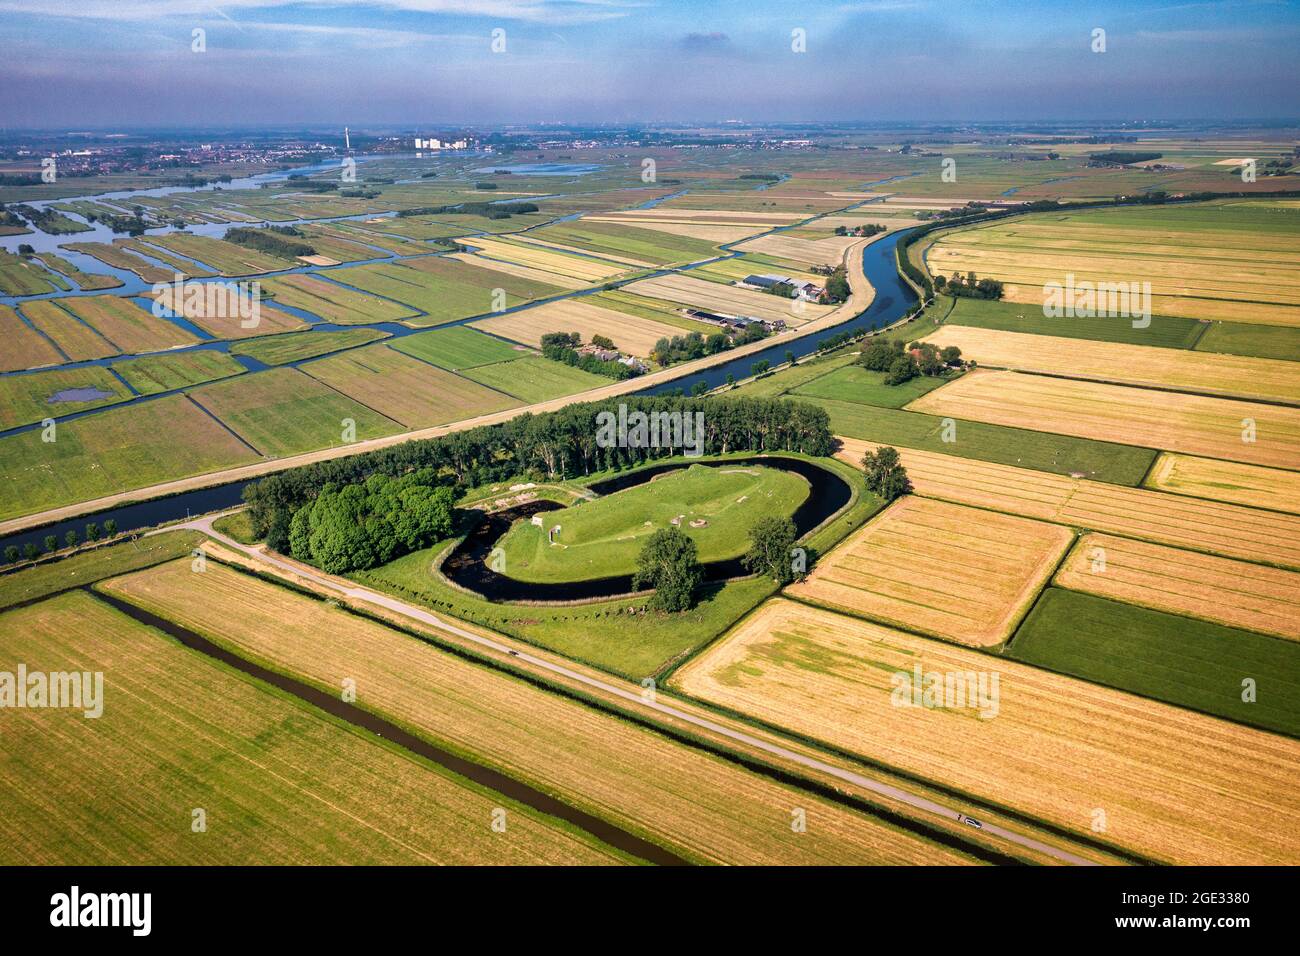 Pays-Bas, Zuidoosstbeemster. Fort aan de Jisperweg. Ligne de défense d'Amsterdam, site classé au patrimoine mondial de l'UNESCO. Antenne. Réserve naturelle. Banque D'Images